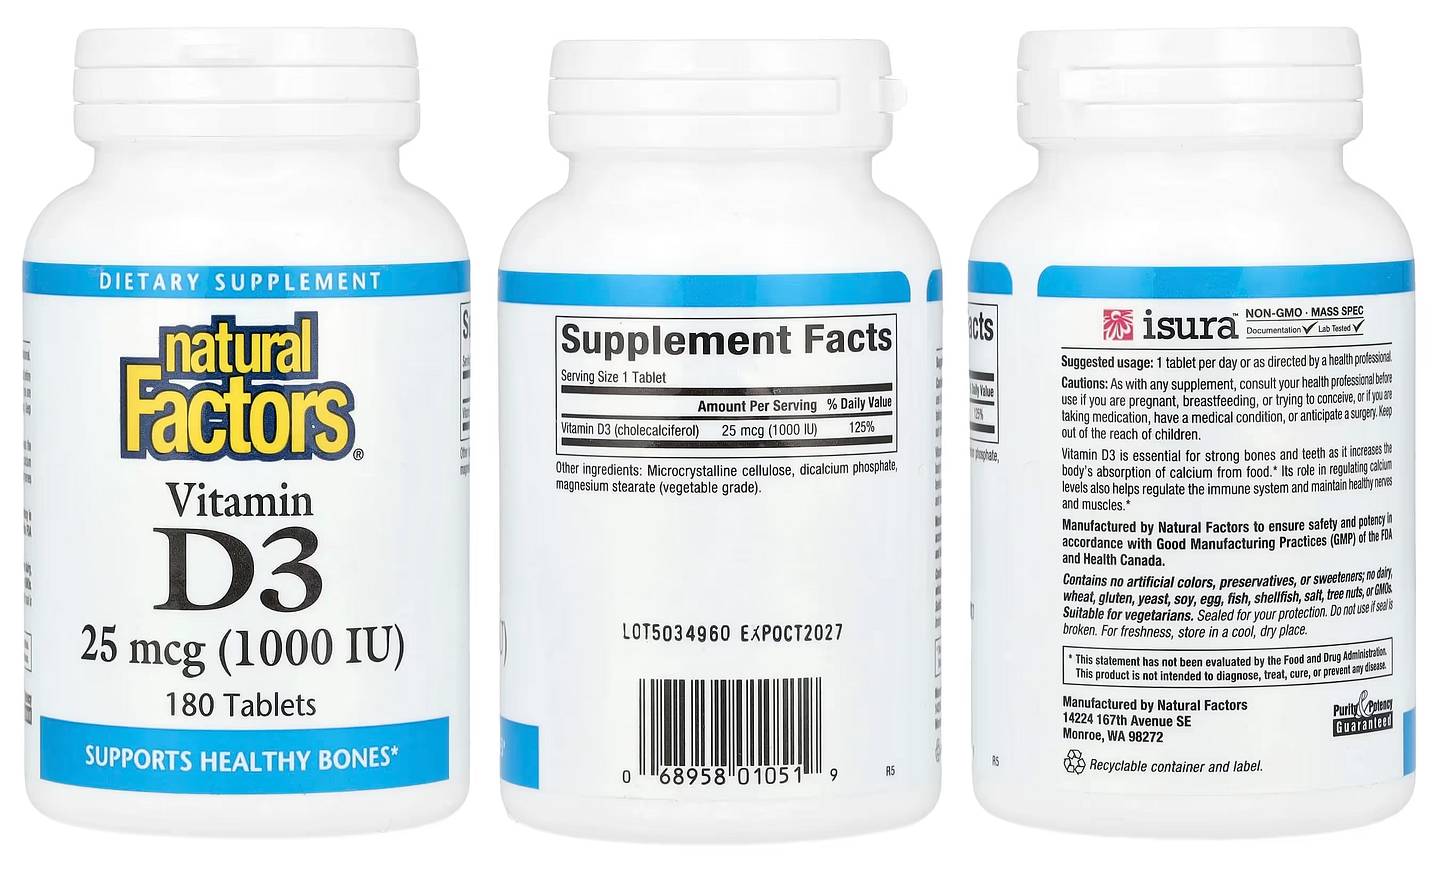 Natural Factors, Vitamin D3 packaging